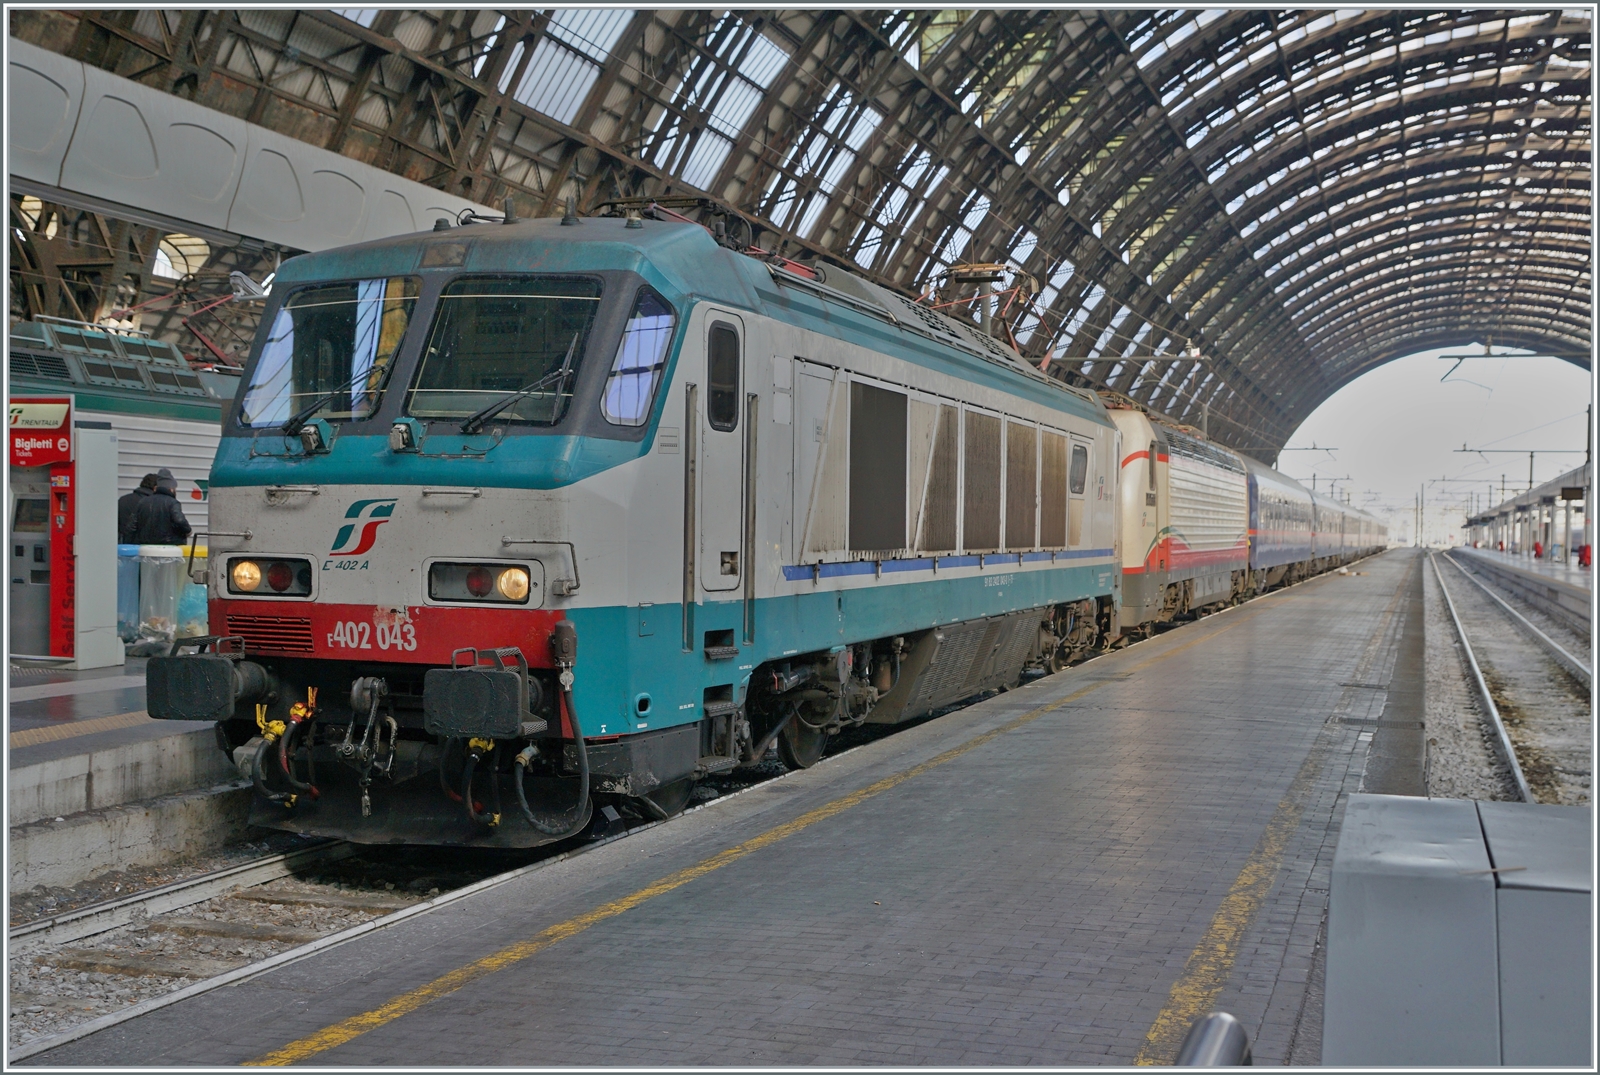 Ein kurzer Rückblick in die Vergangenheit: Die FS Trenitalia E 402 043 mit einer E 402 B
sind mit ihrem Nightjet 233 von Wien in Milano eingetroffen. 

16. Nov. 2017